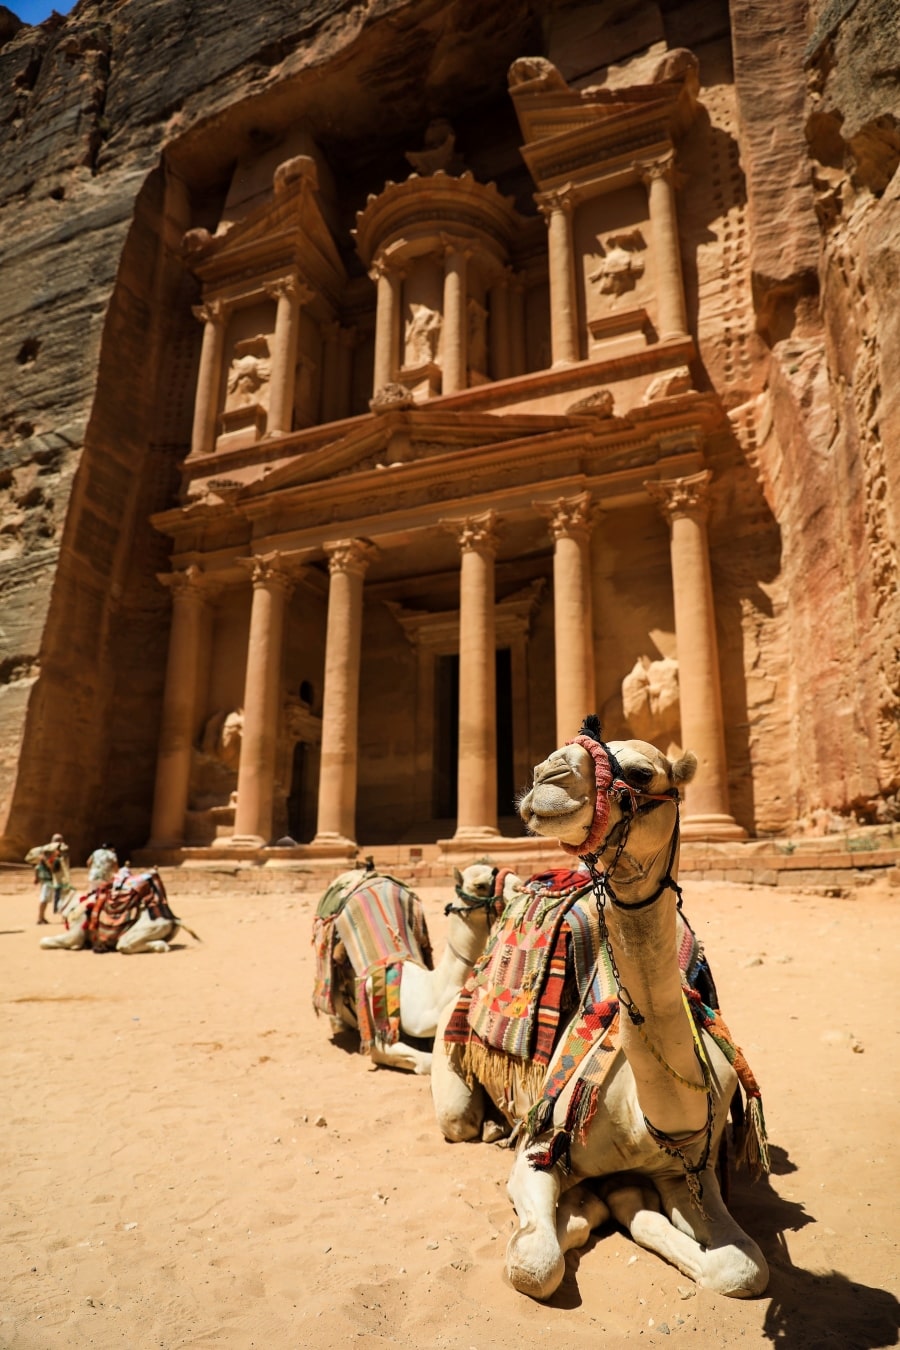  Petra in Jordan